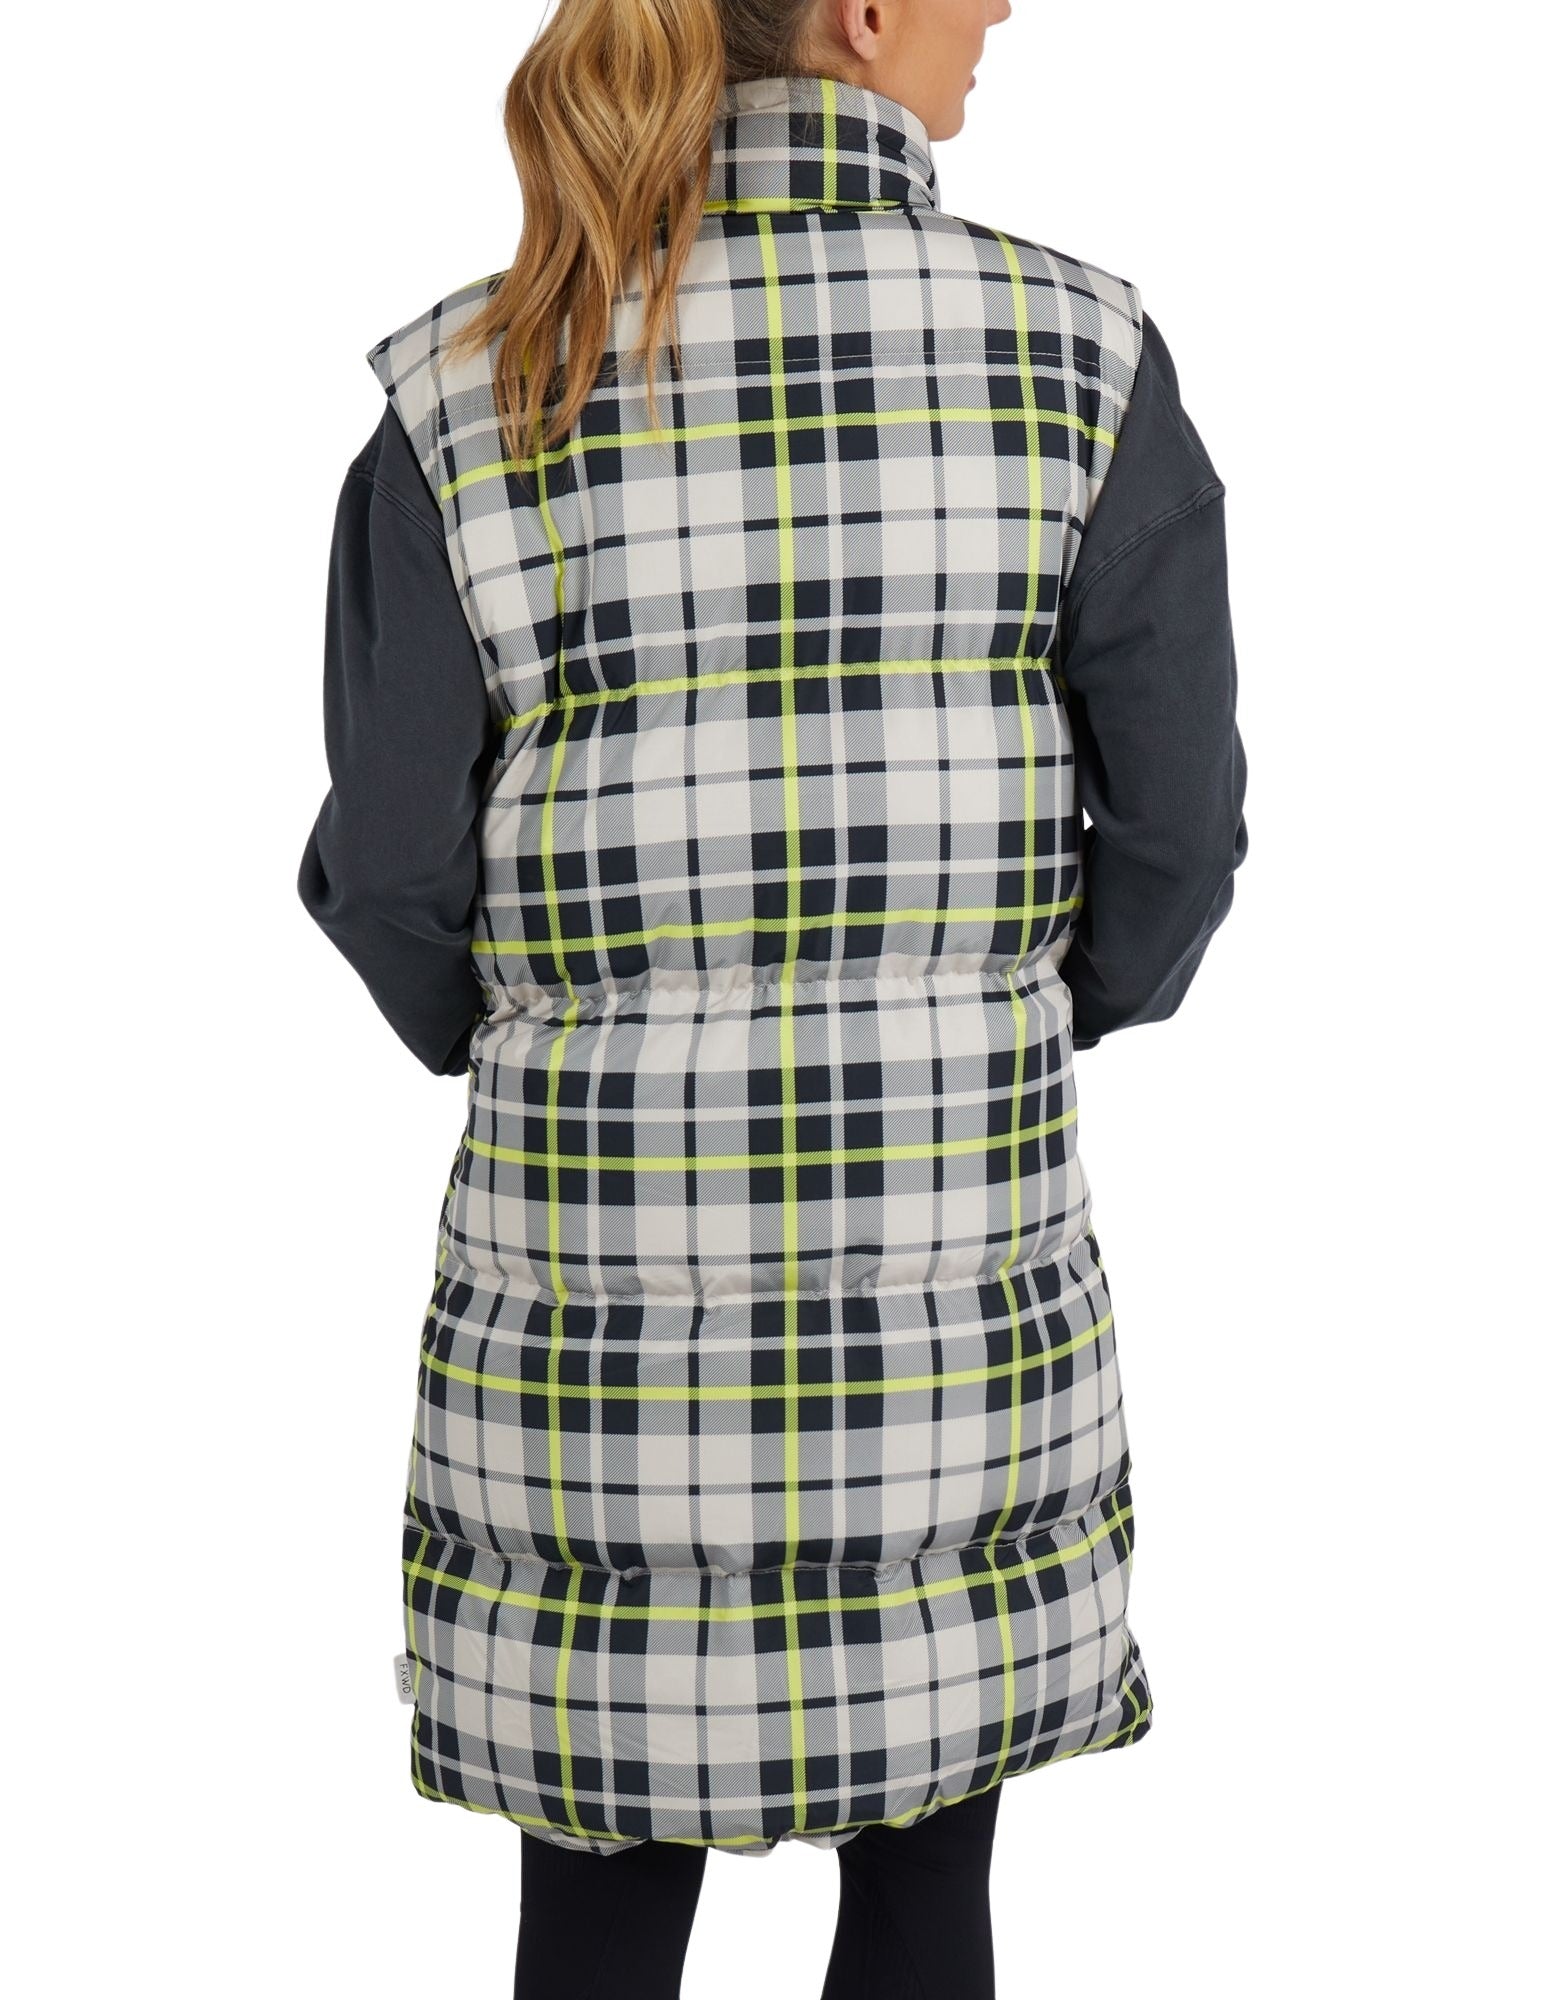 Foxwood - LeisureFit Check It Long Line Vest - Black Check - Last One Size 8!